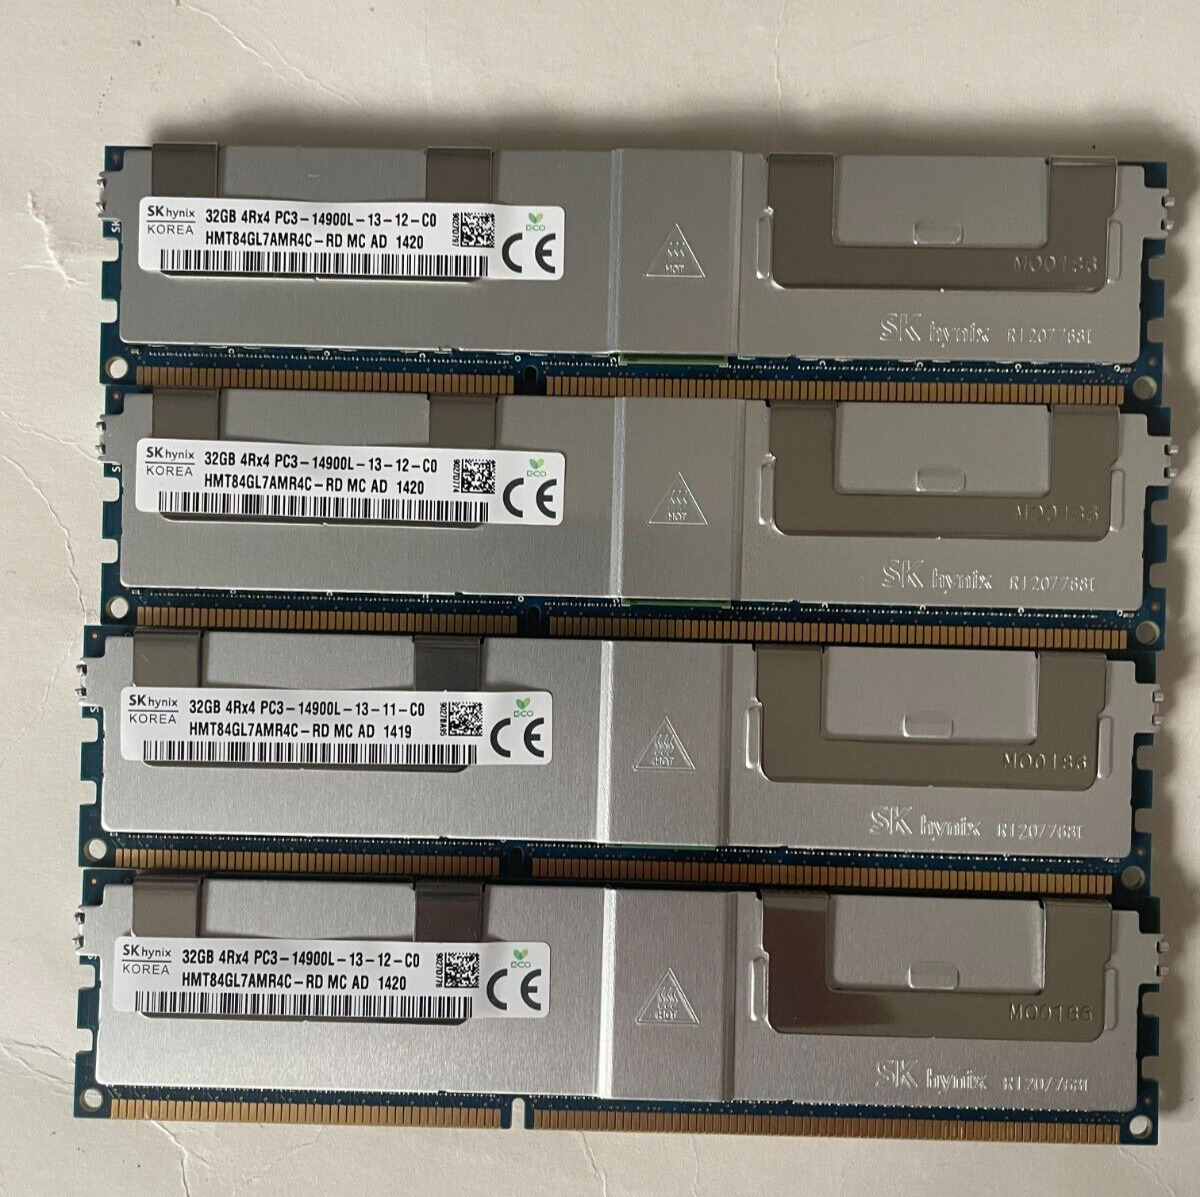 SKhynix 128GB (4x 32GB) HMT84GL7AMR4C-RD PC3-14900L 4Rx4 DDR3 ECC Server Memory